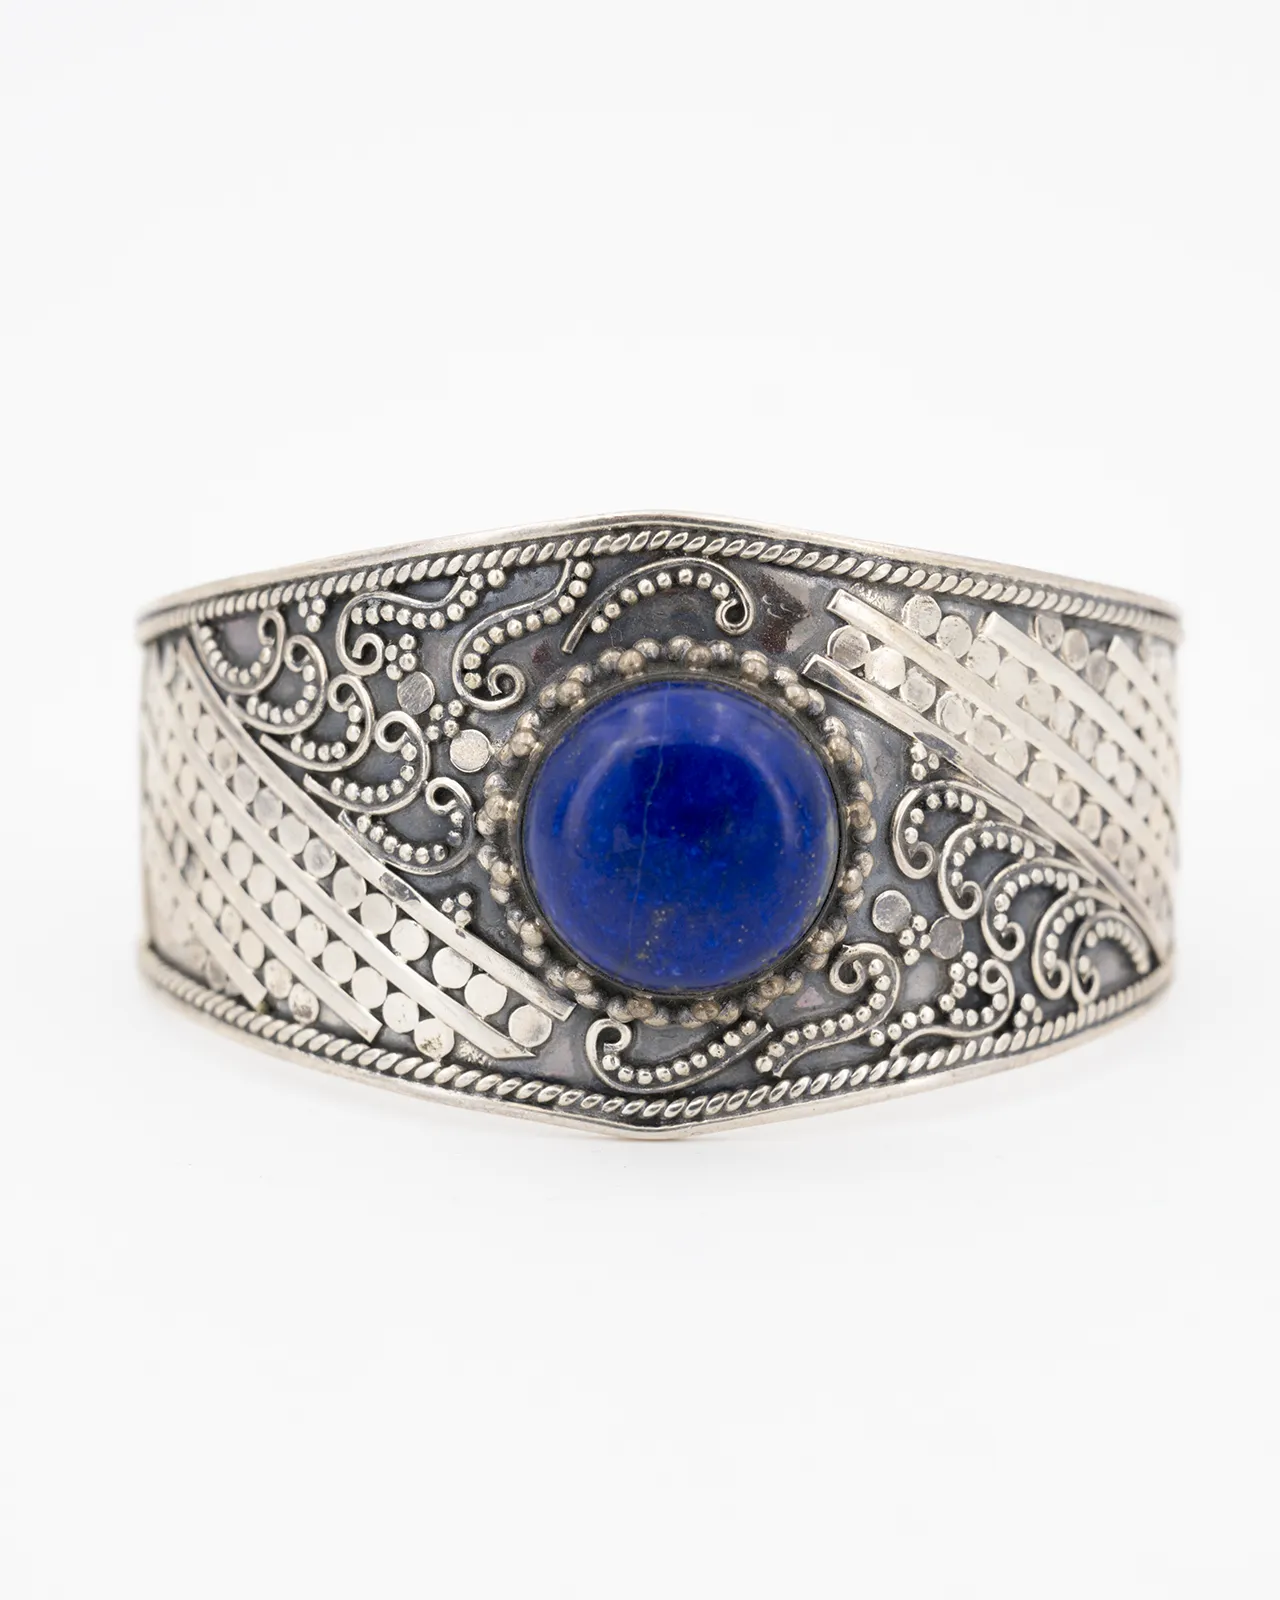 Un bracelet en argent fait main avec des motifs élégants et serti d'un lapis lazuli rond